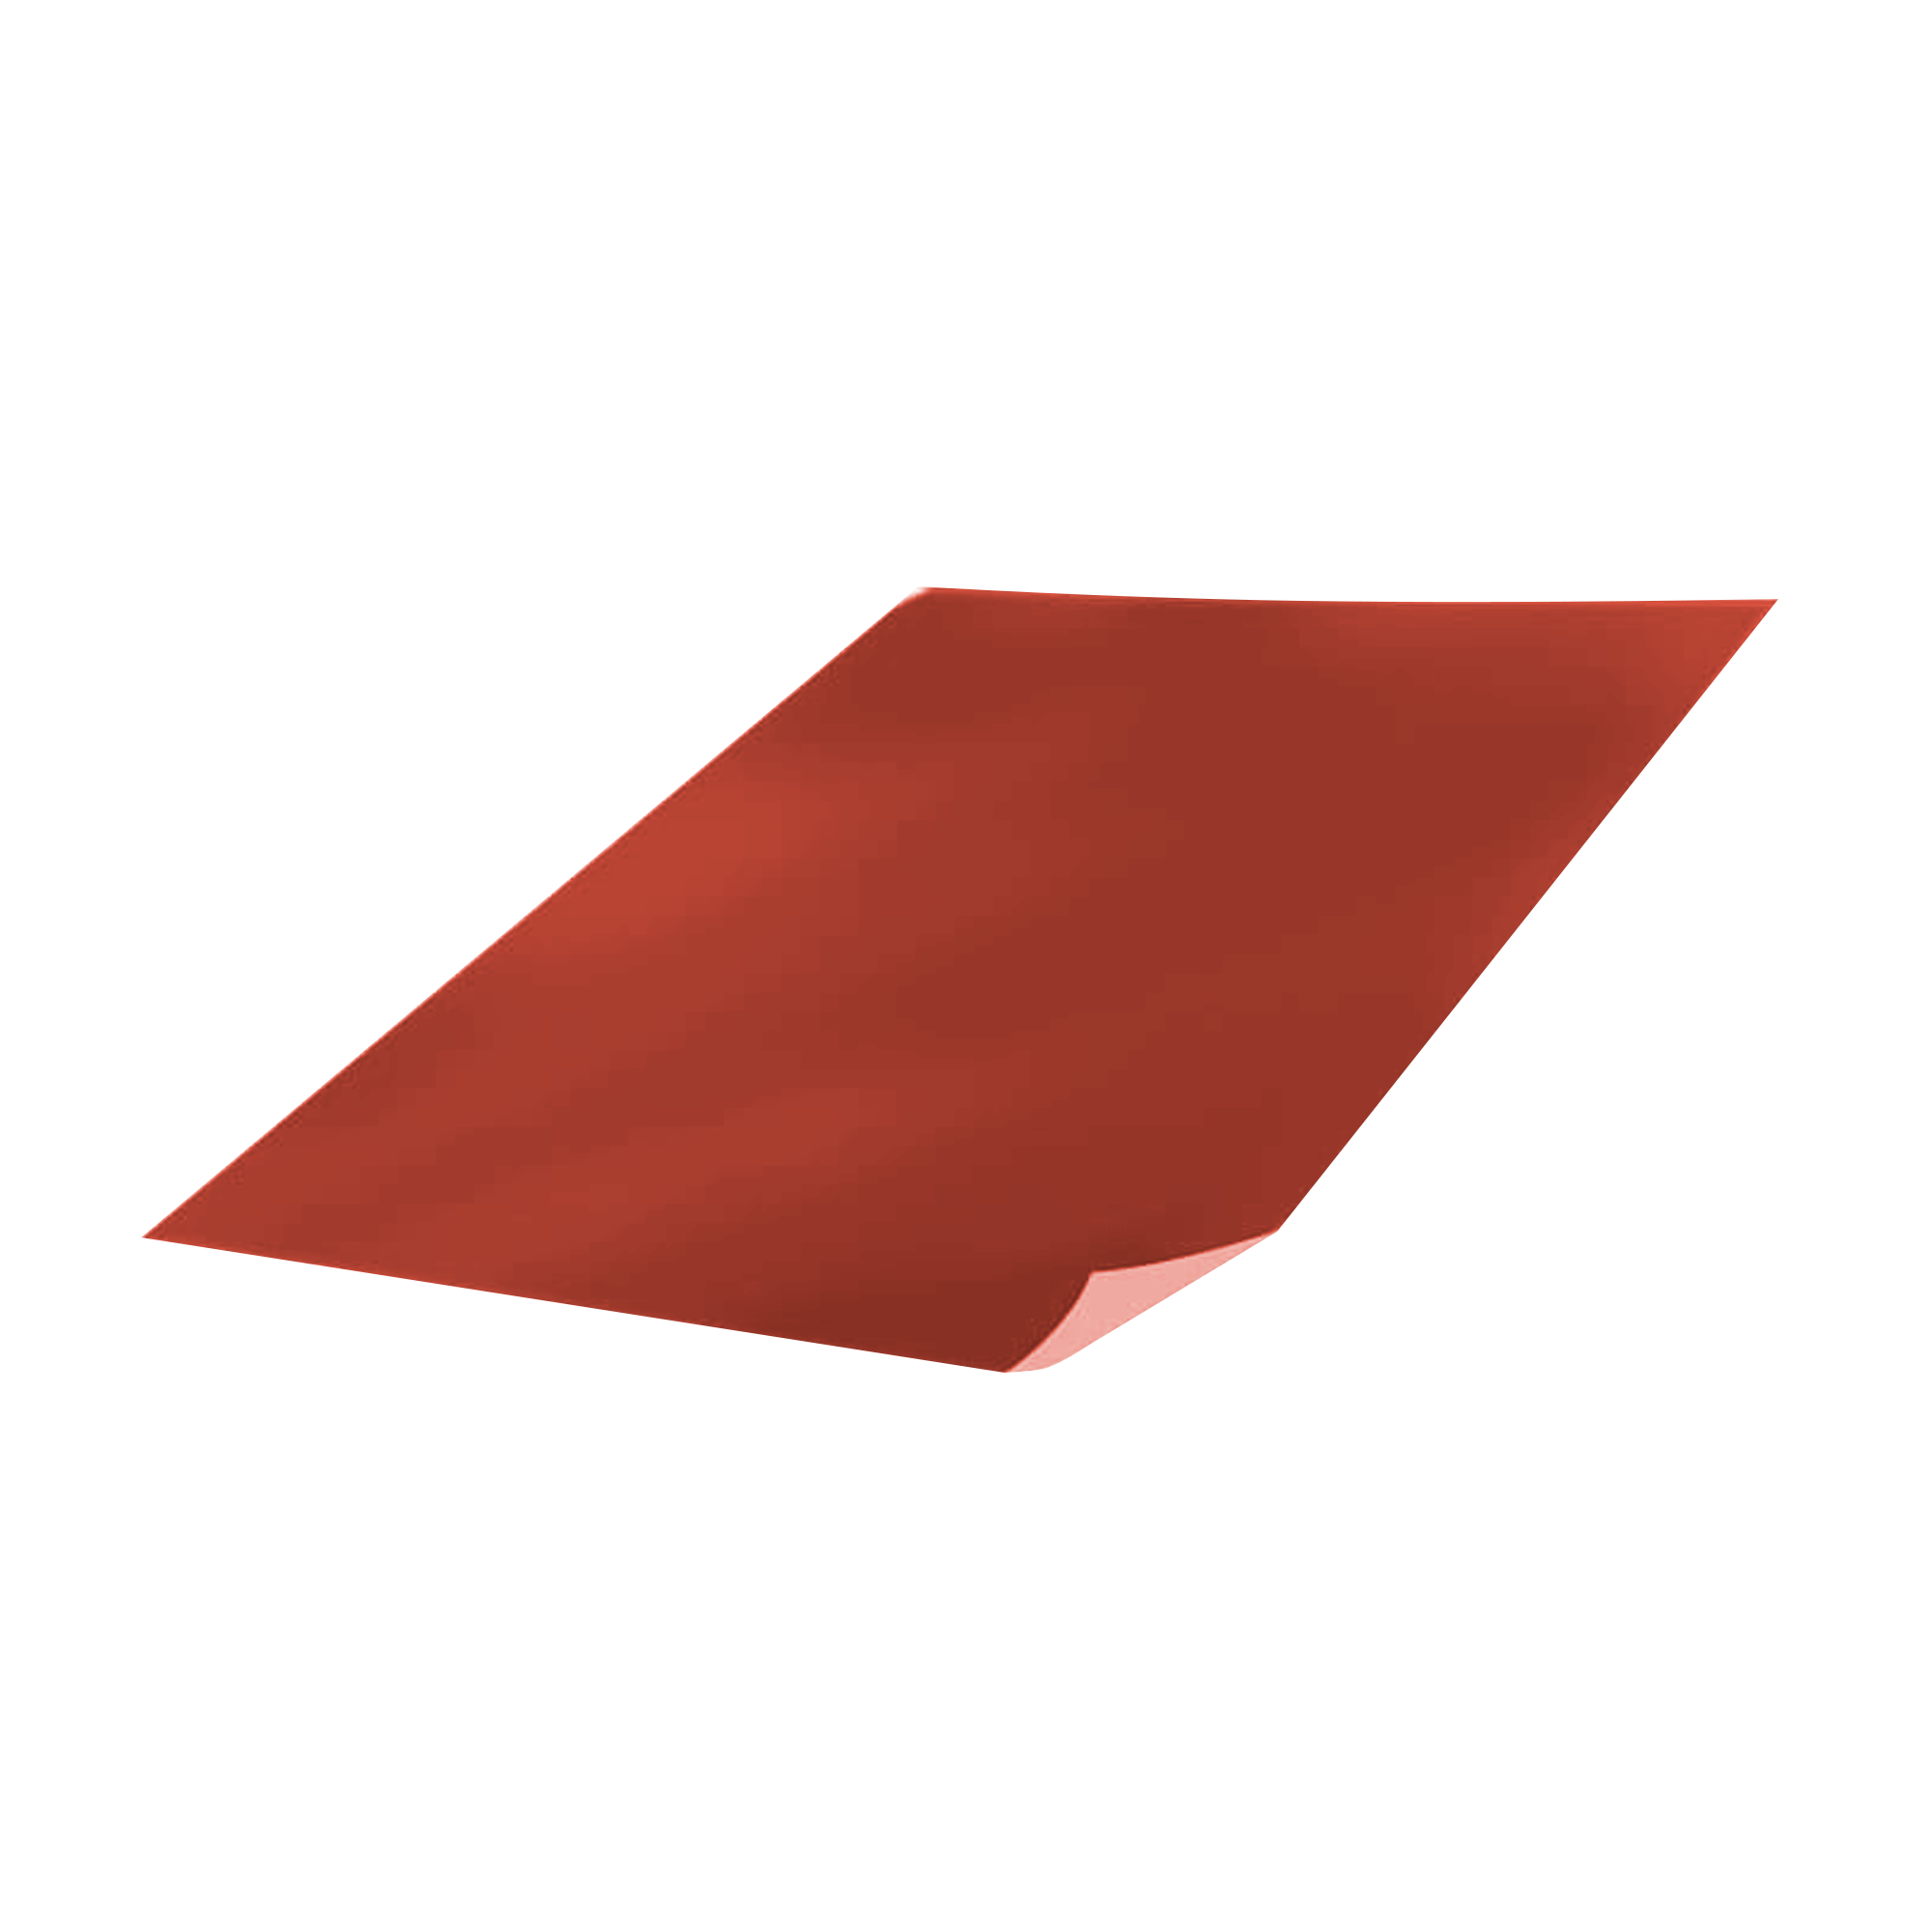 Плоский лист Медно-коричневый 0,5 мм Королевский шелк Кровля Сервис